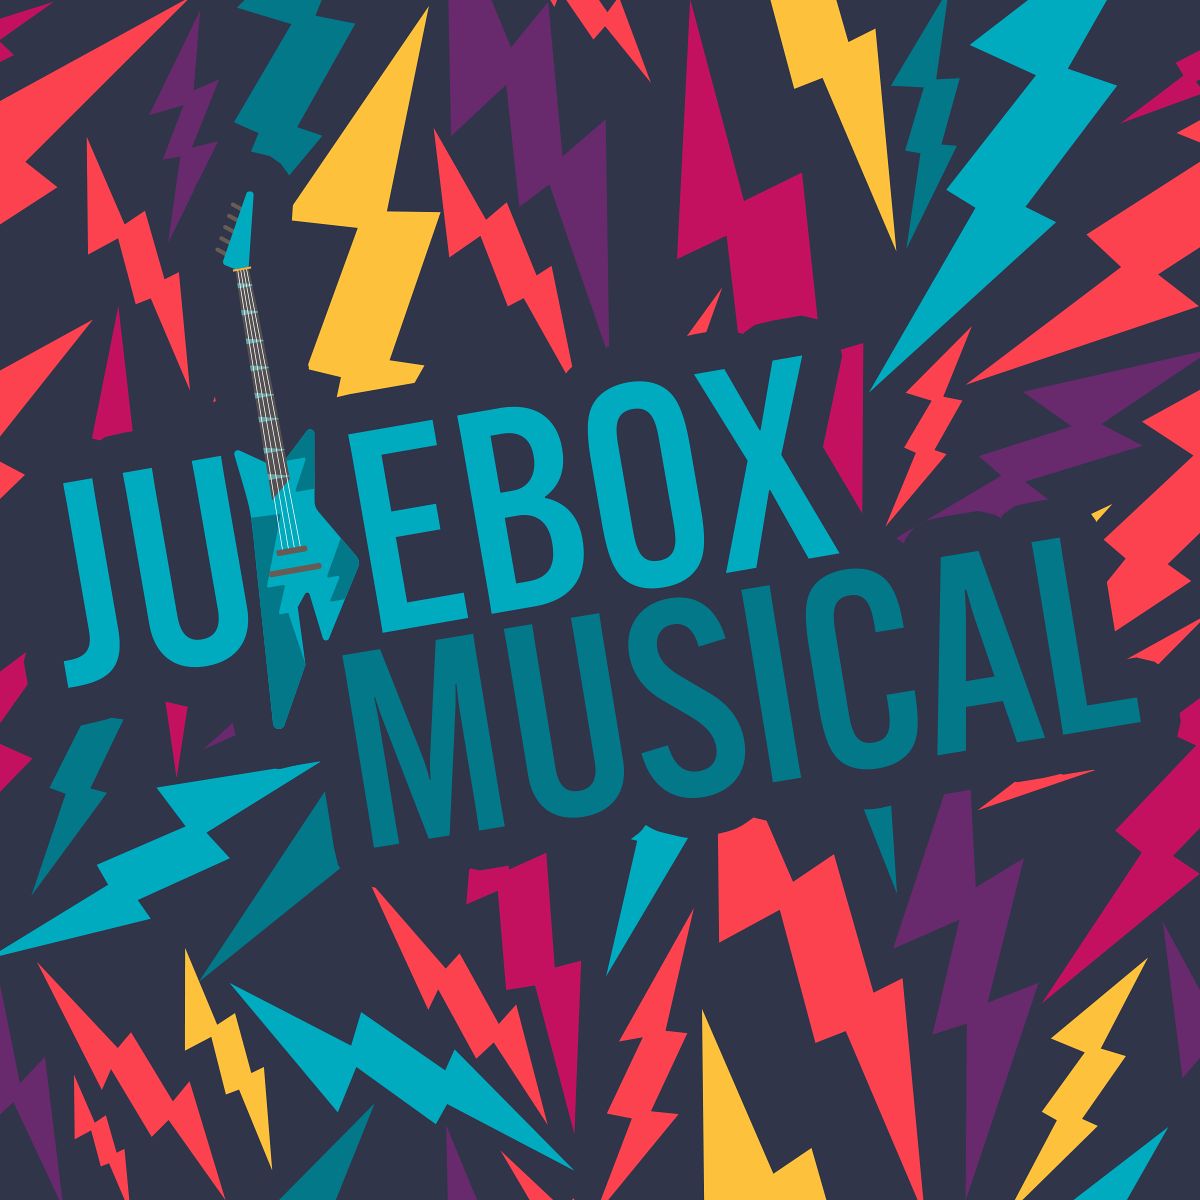 Jukebox Musical